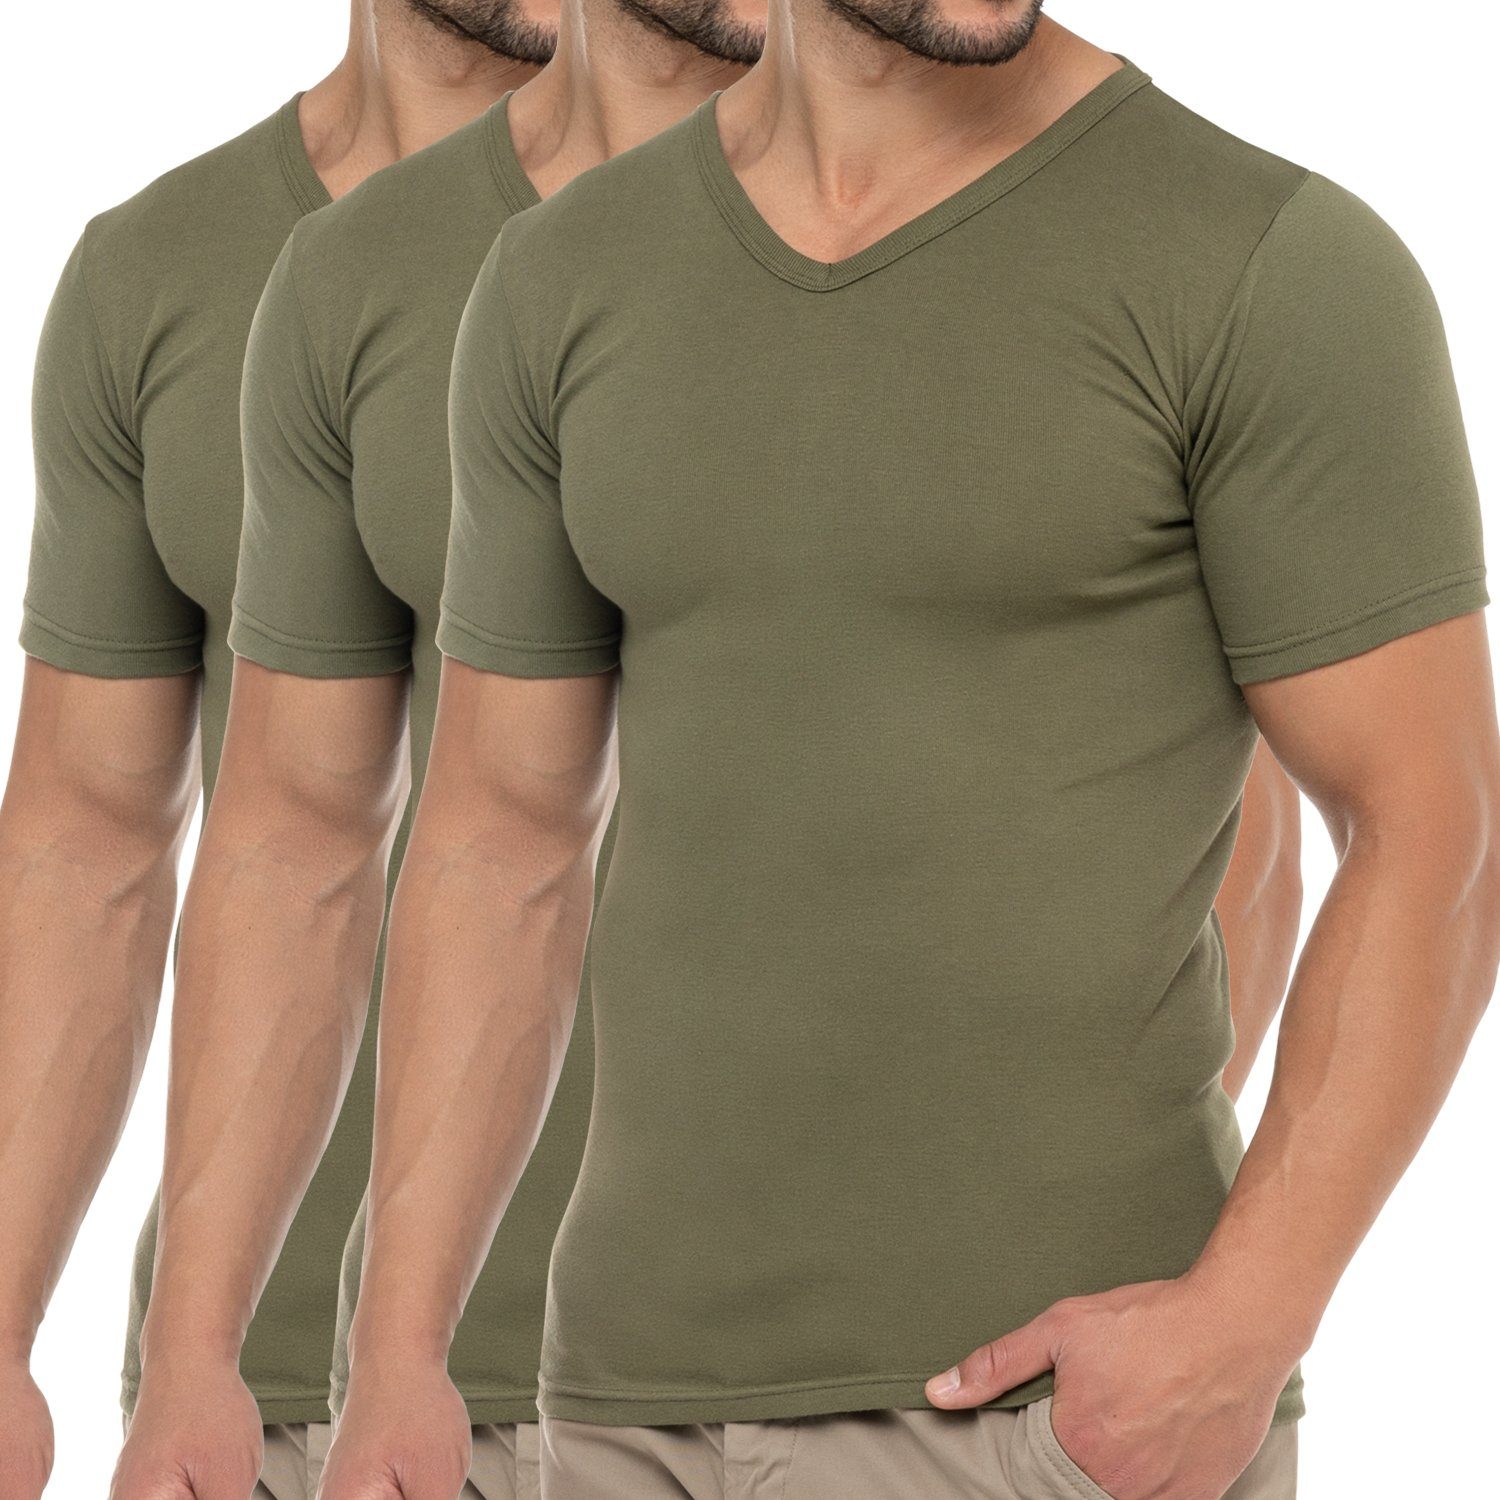 Baumwolle Olive Feinripp T-Shirt (1er/3er) Herren celodoro Kurzarmshirt Business V-Neck